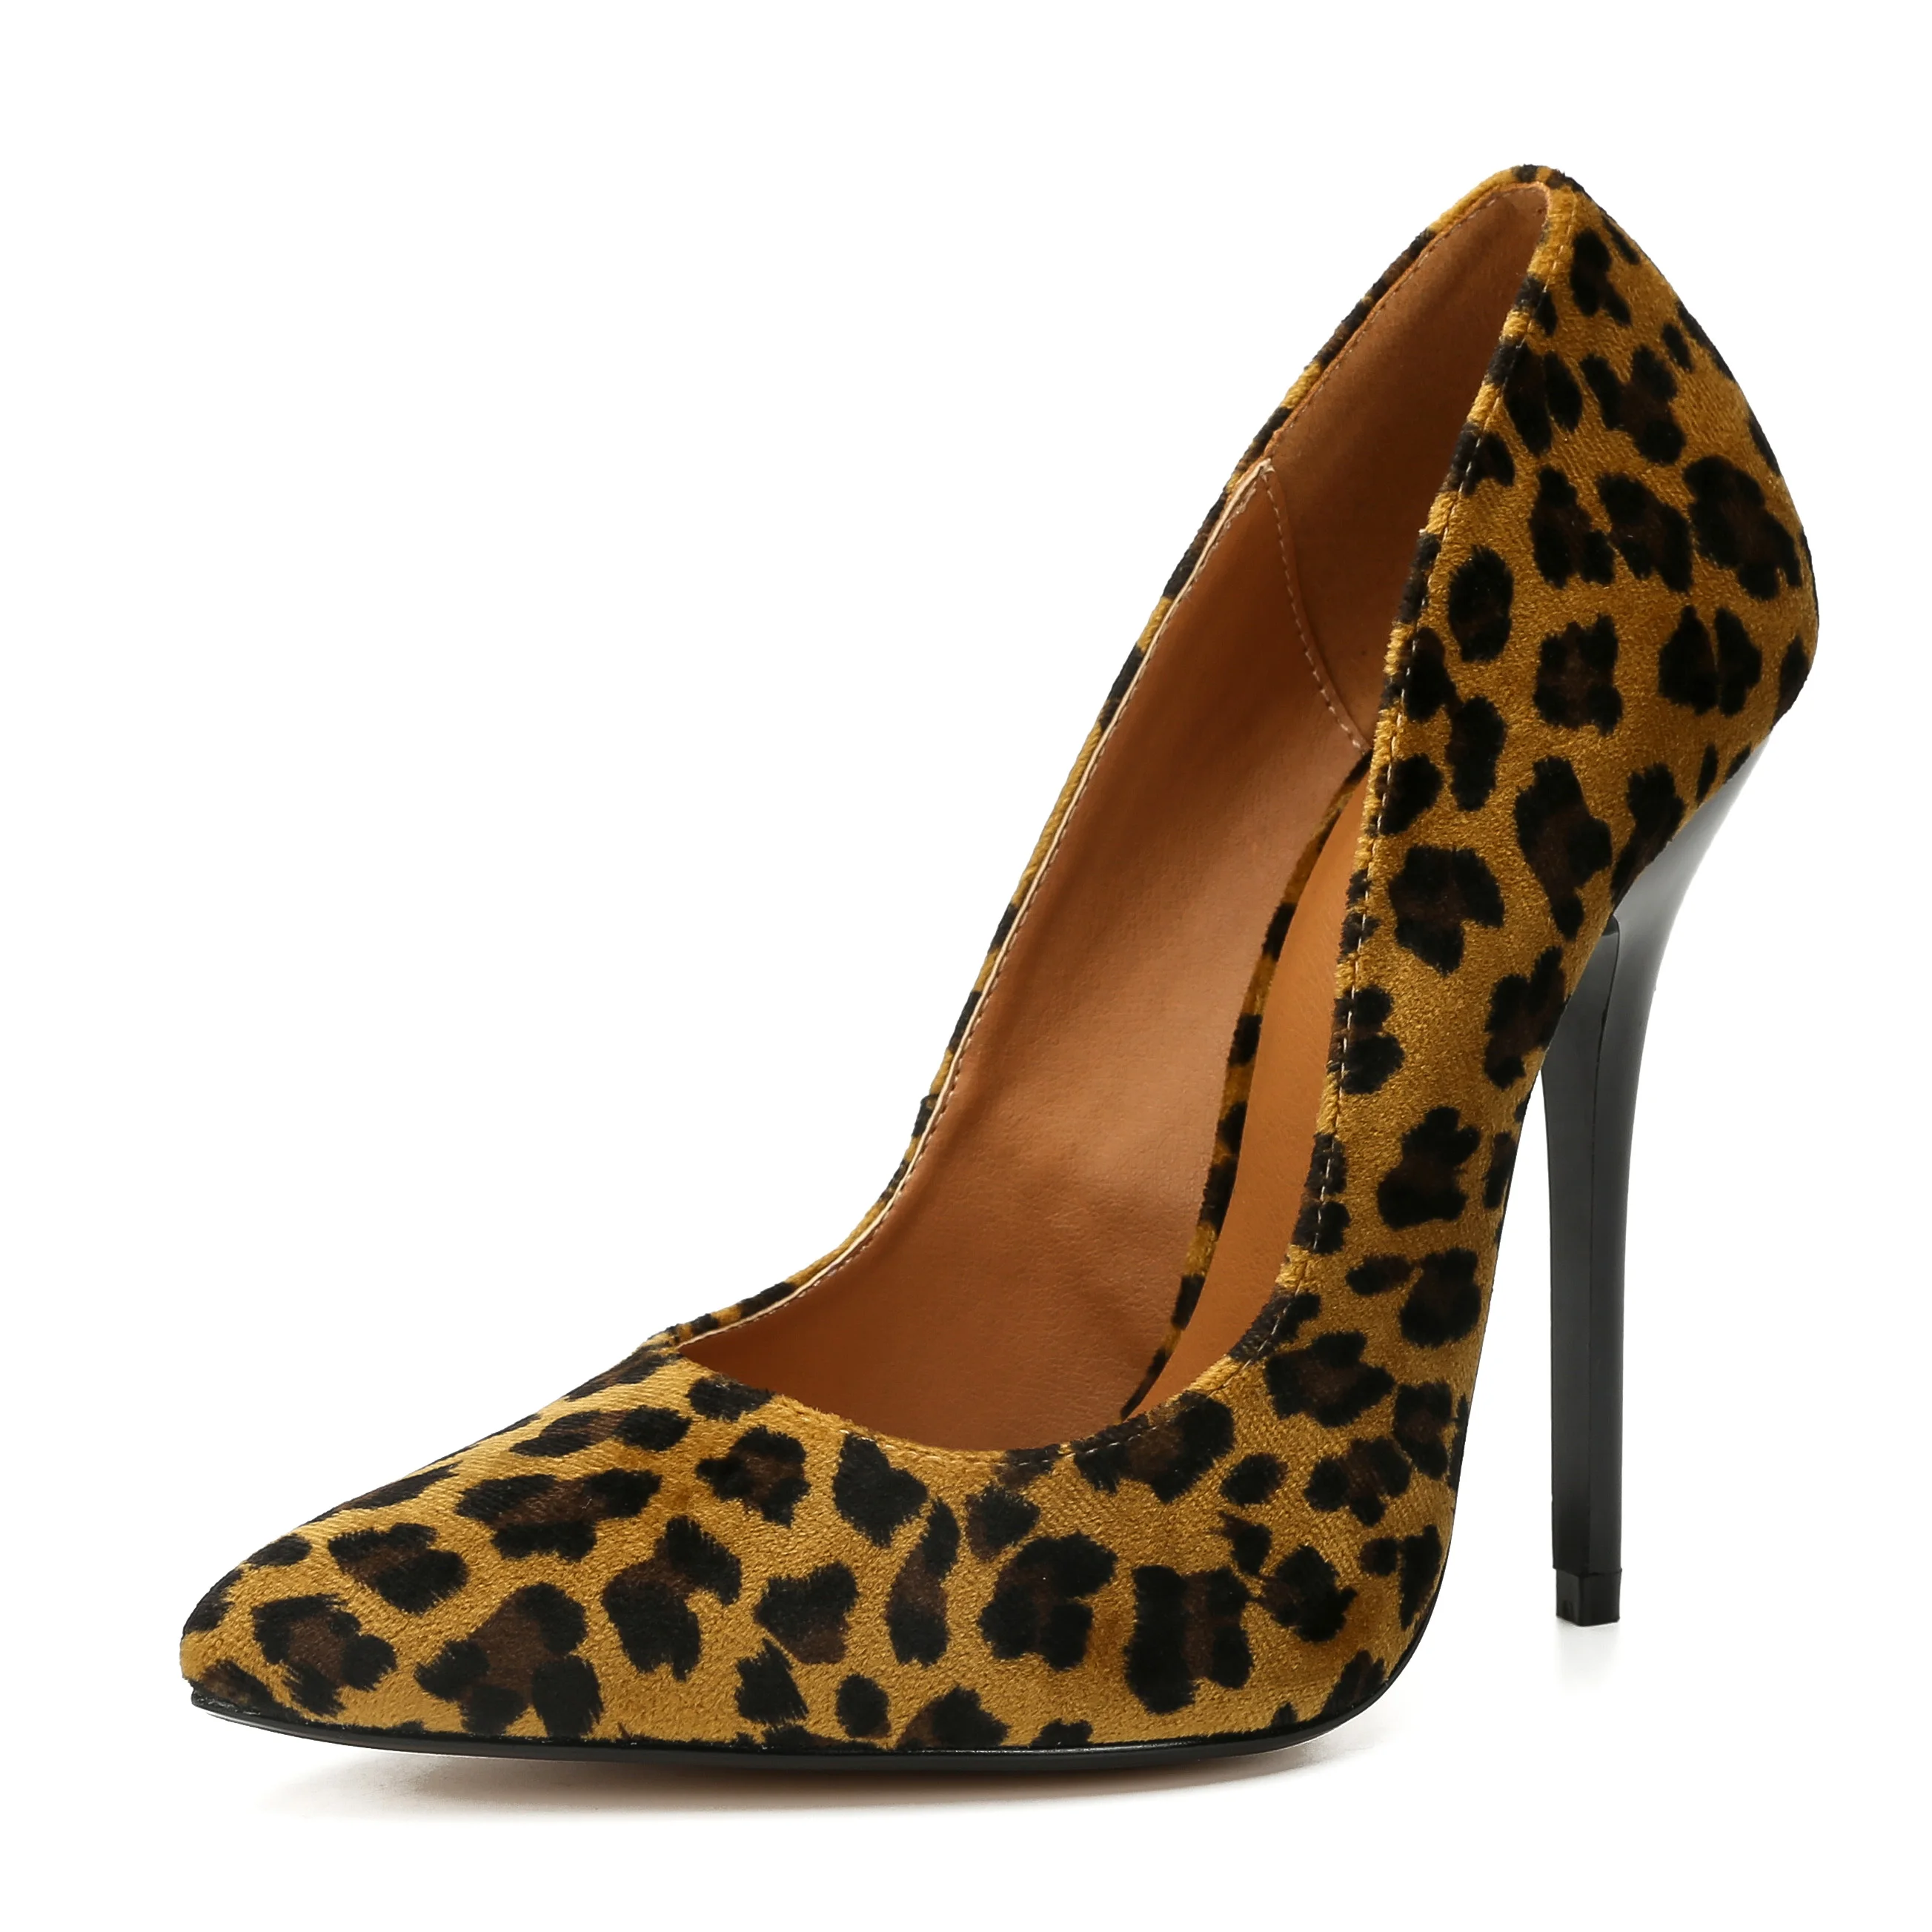 LLXF/Большие размеры: 45, 46, 47, 48, 49; zapatos mujer; женские красные модельные туфли на тонком металлическом каблуке 14 см; Pantent; кожаные туфли-лодочки с острым носком для костюмированной вечеринки - Цвет: Leopard Print